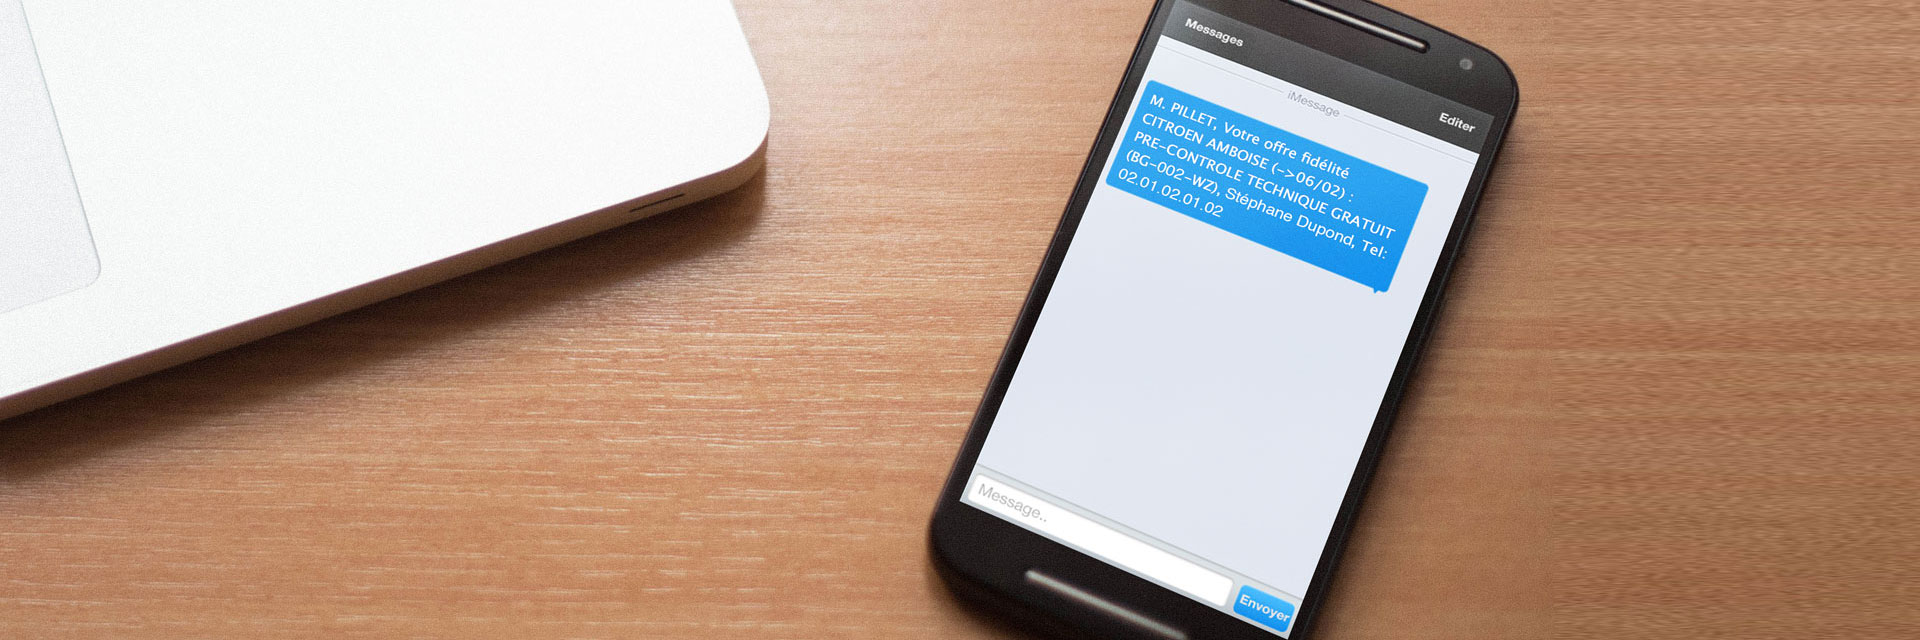 Envoi de SMS : pour atteindre les clients, c’est beaucoup plus simple